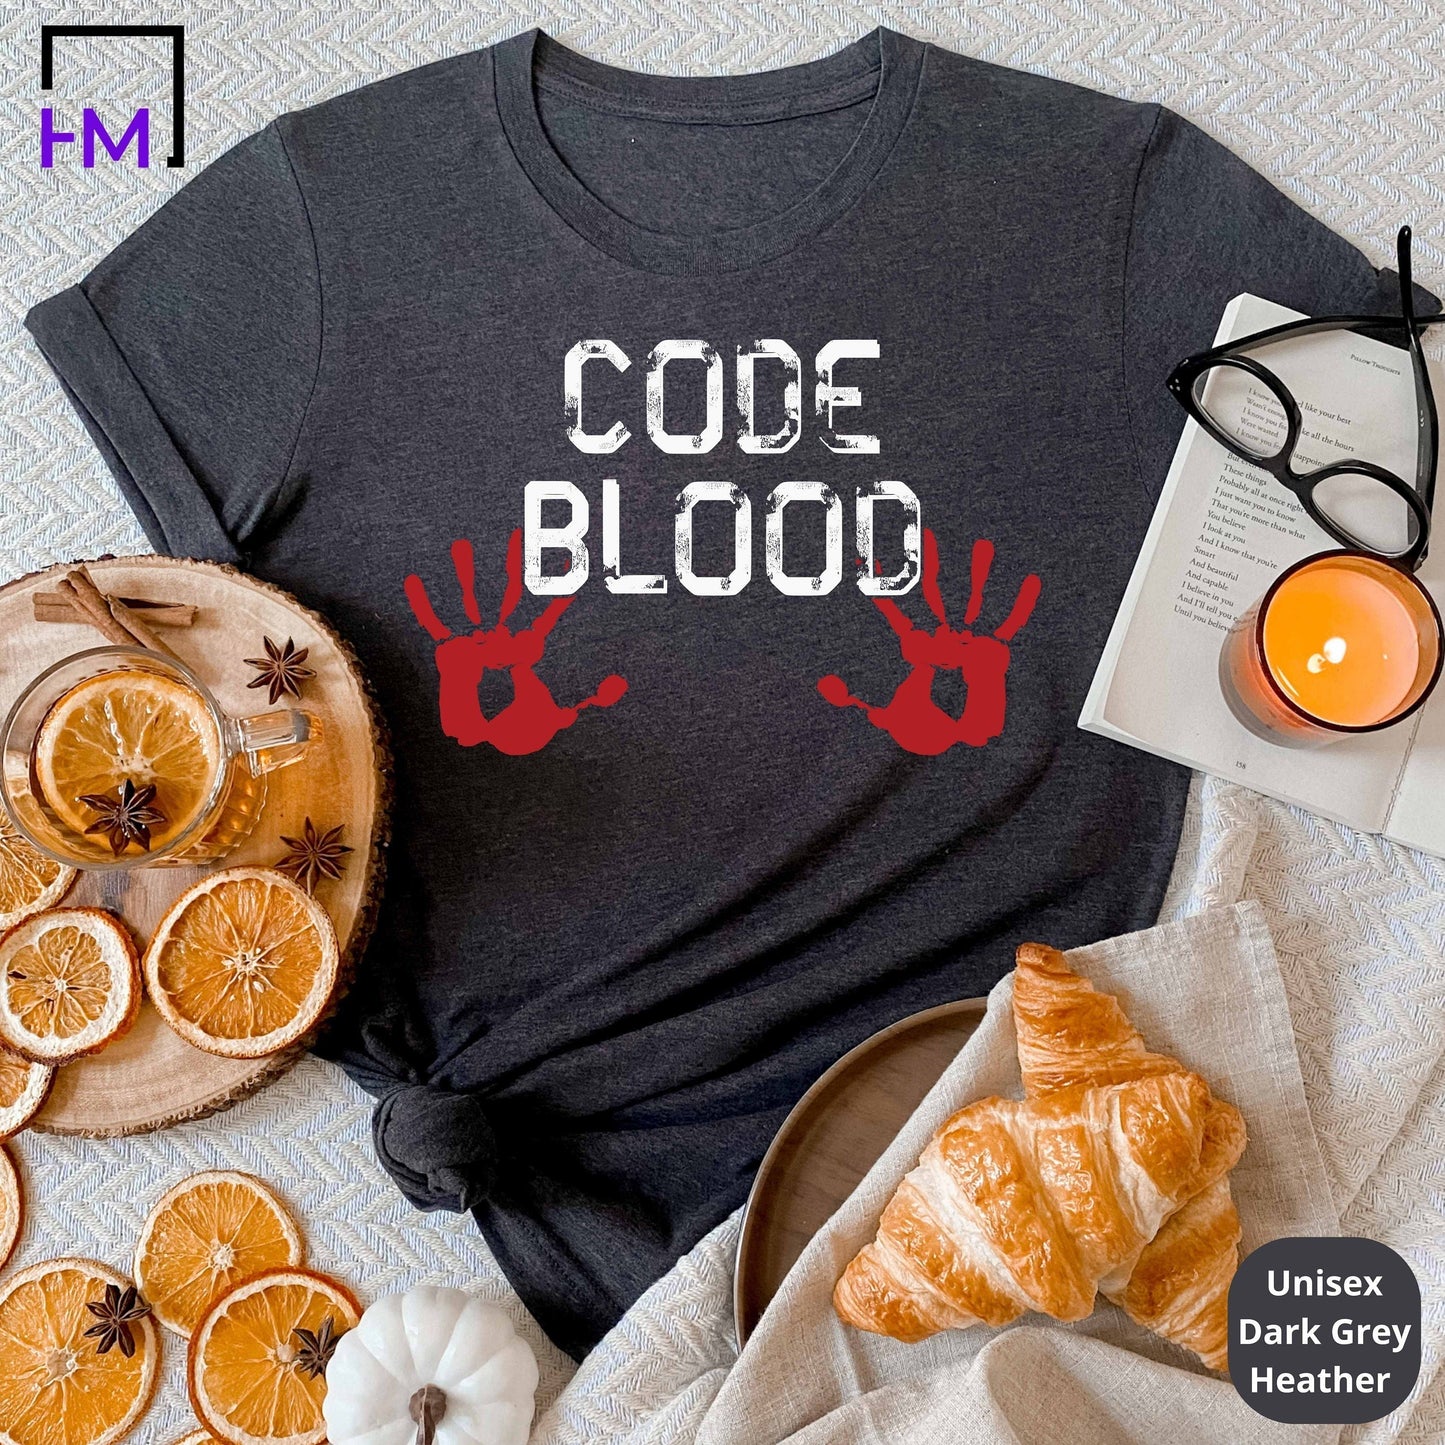 Computer Geek Gifts, Software Engineer Shirt, Computer Shirt, Nerd Shirt, Programmer Shirt, Coding Shirt, Computer Nerd Gift, Hacker Shirt